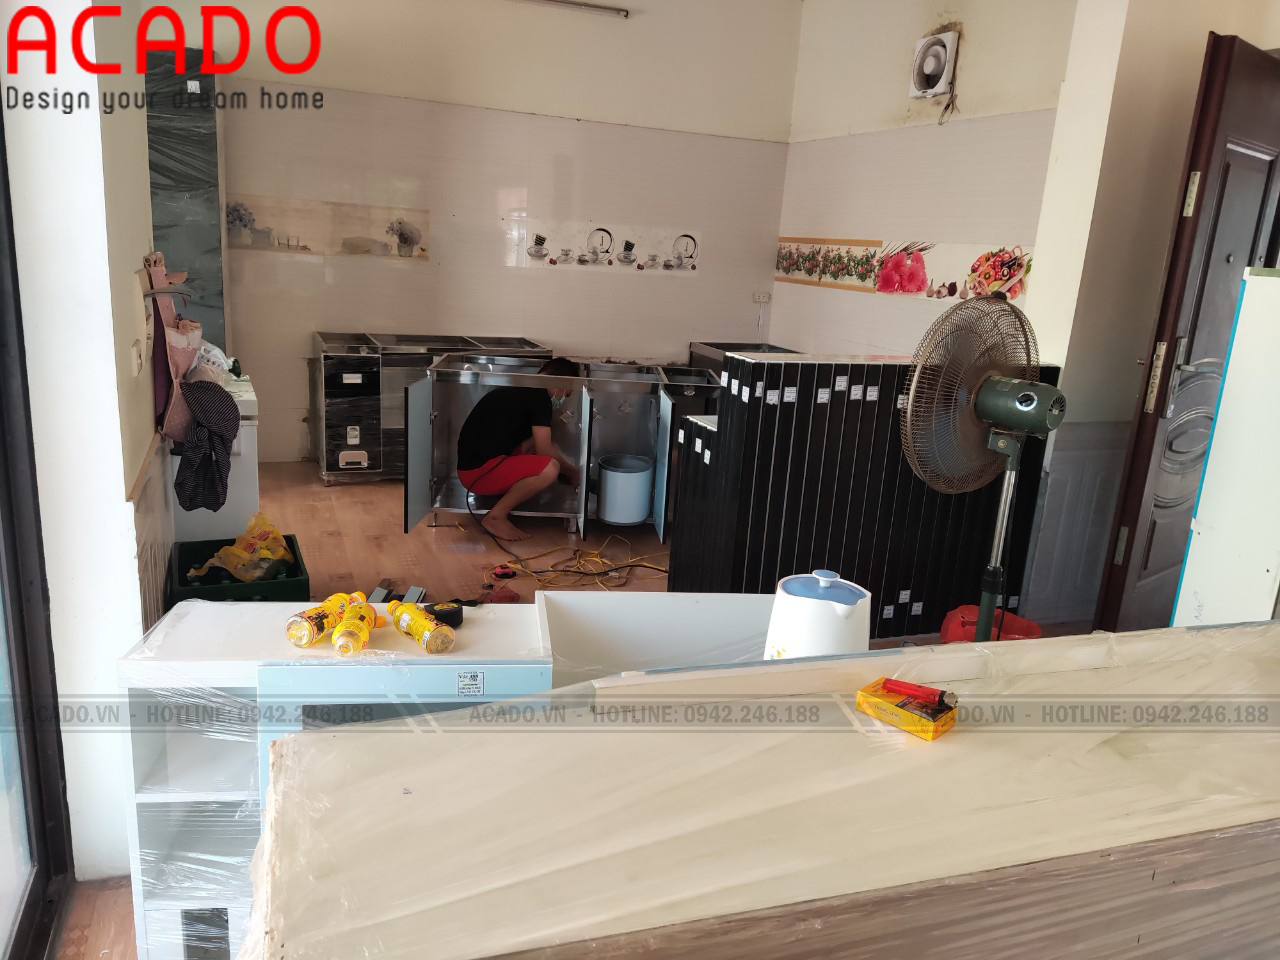 Thợ thi công vận chuyển đồ đạc đến địa điểm lắp đặt - Thi công tủ bếp tại Vĩnh Phúc